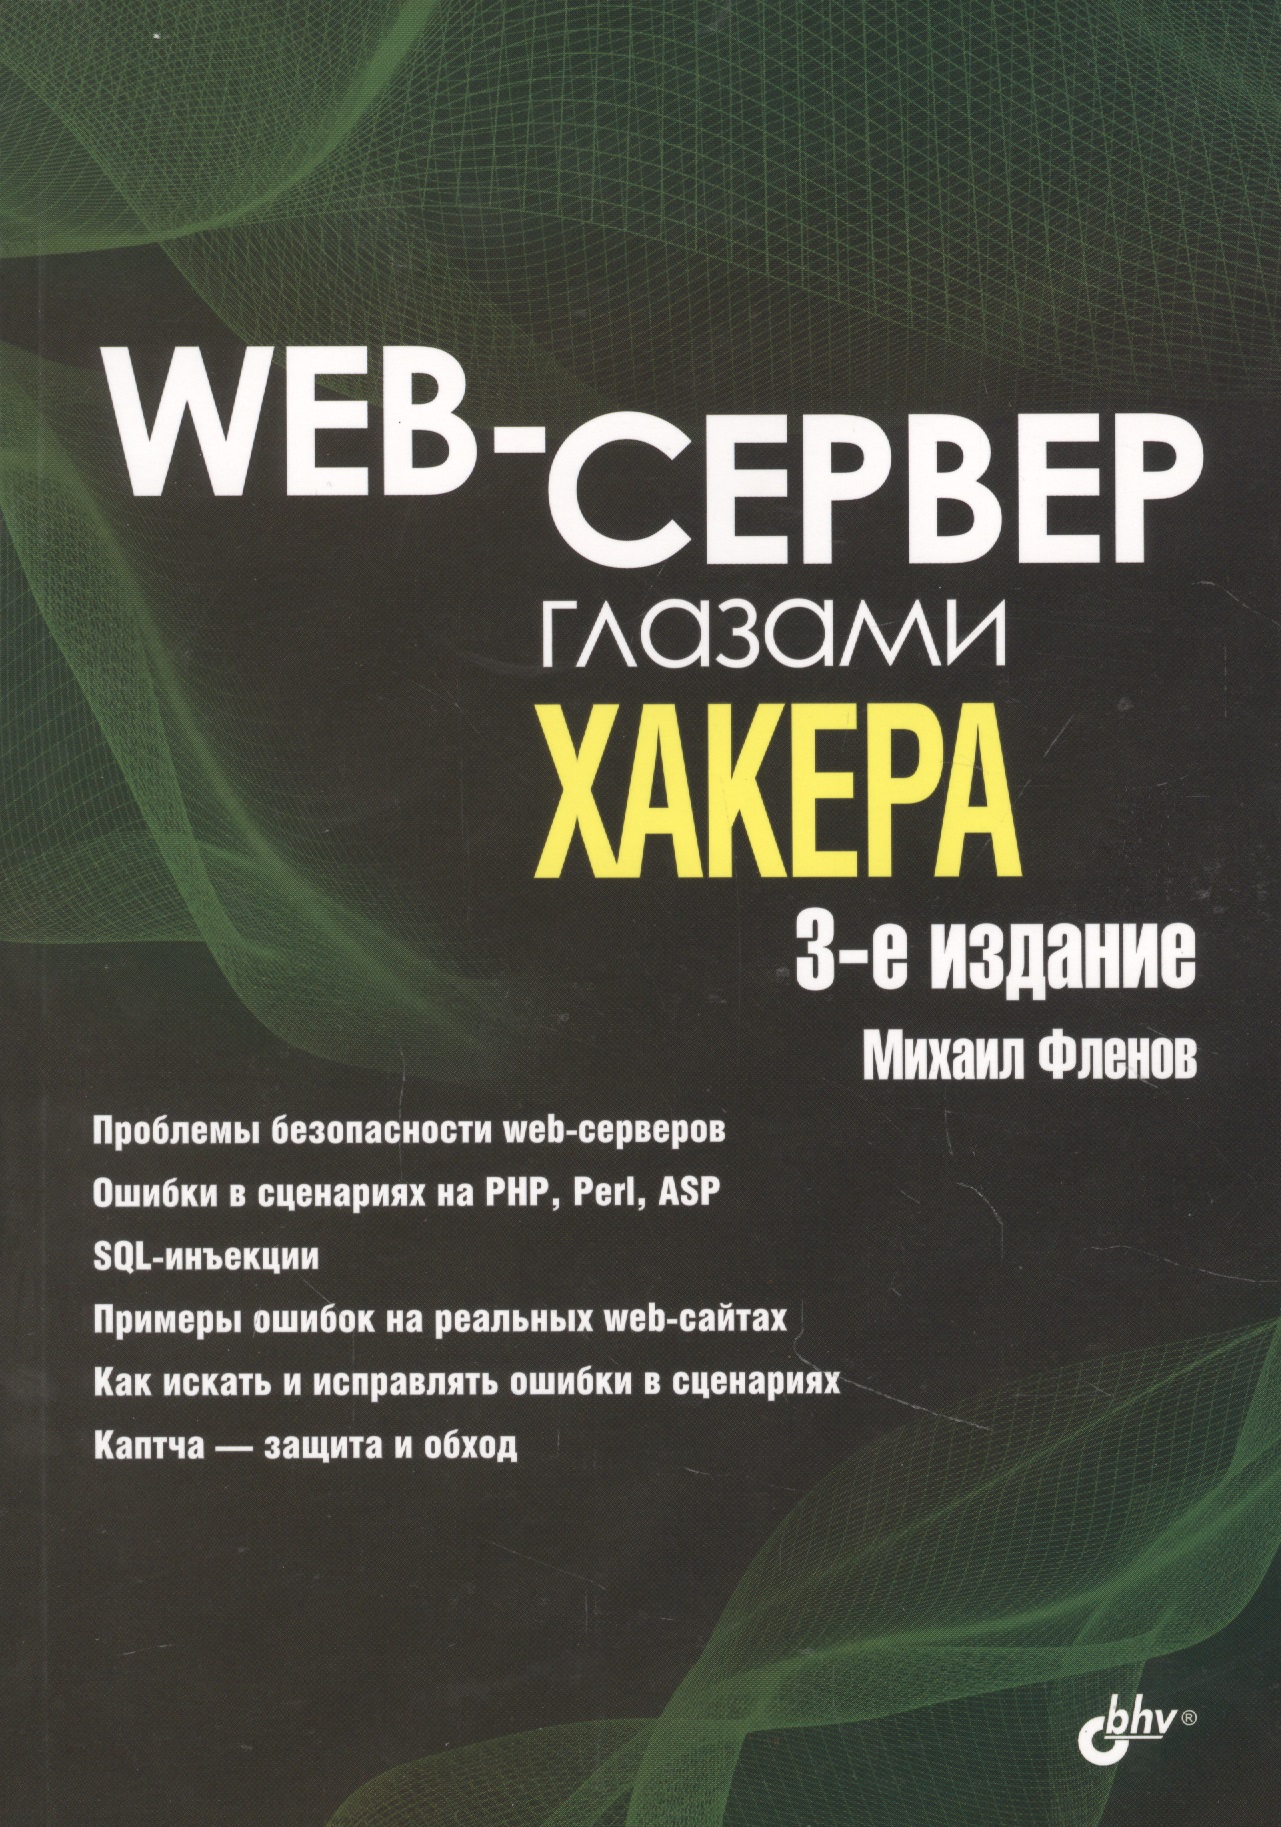 Фленов Михаил Евгеньевич Web-сервер глазами хакера цена и фото